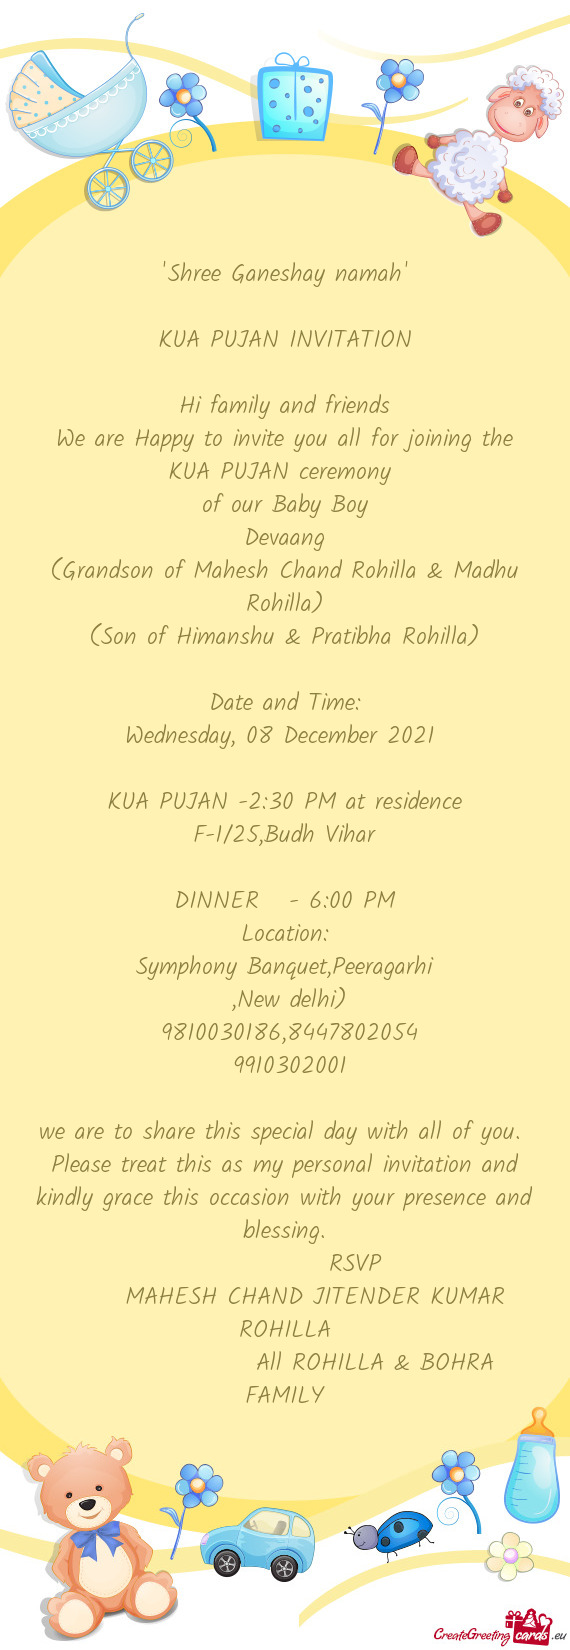 Symphony Banquet,Peeragarhi